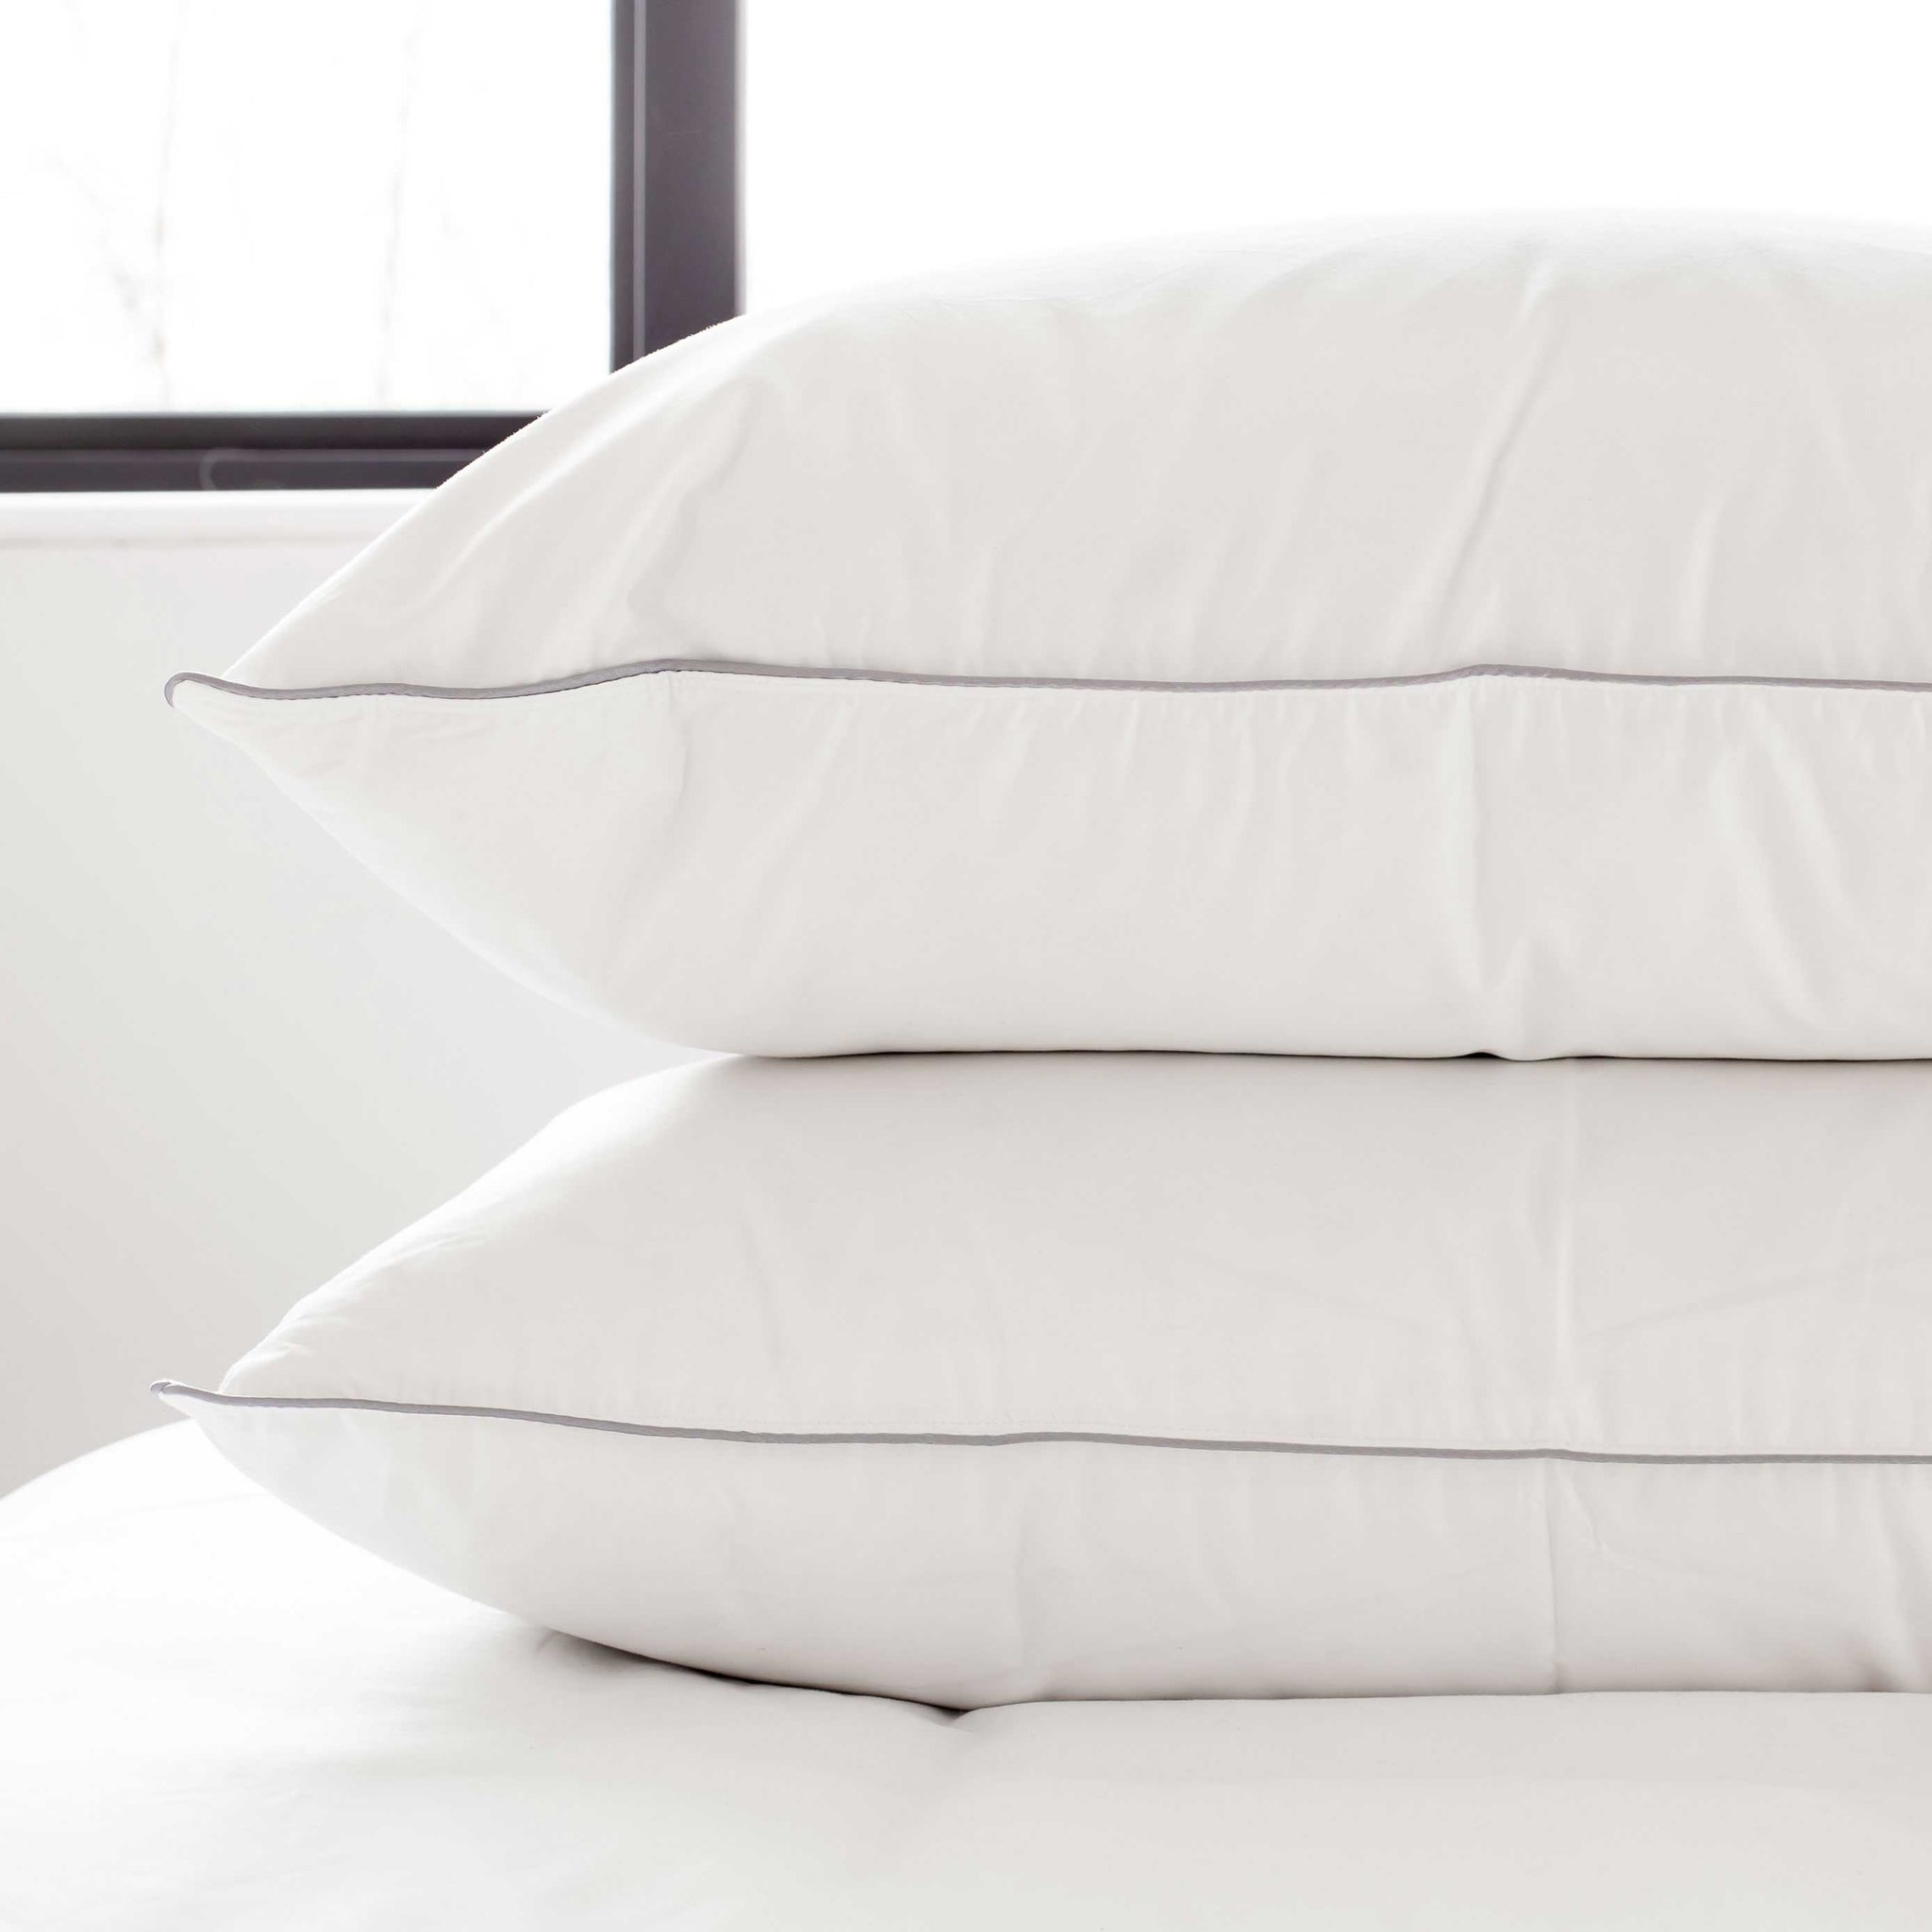 Standard size pillow pair